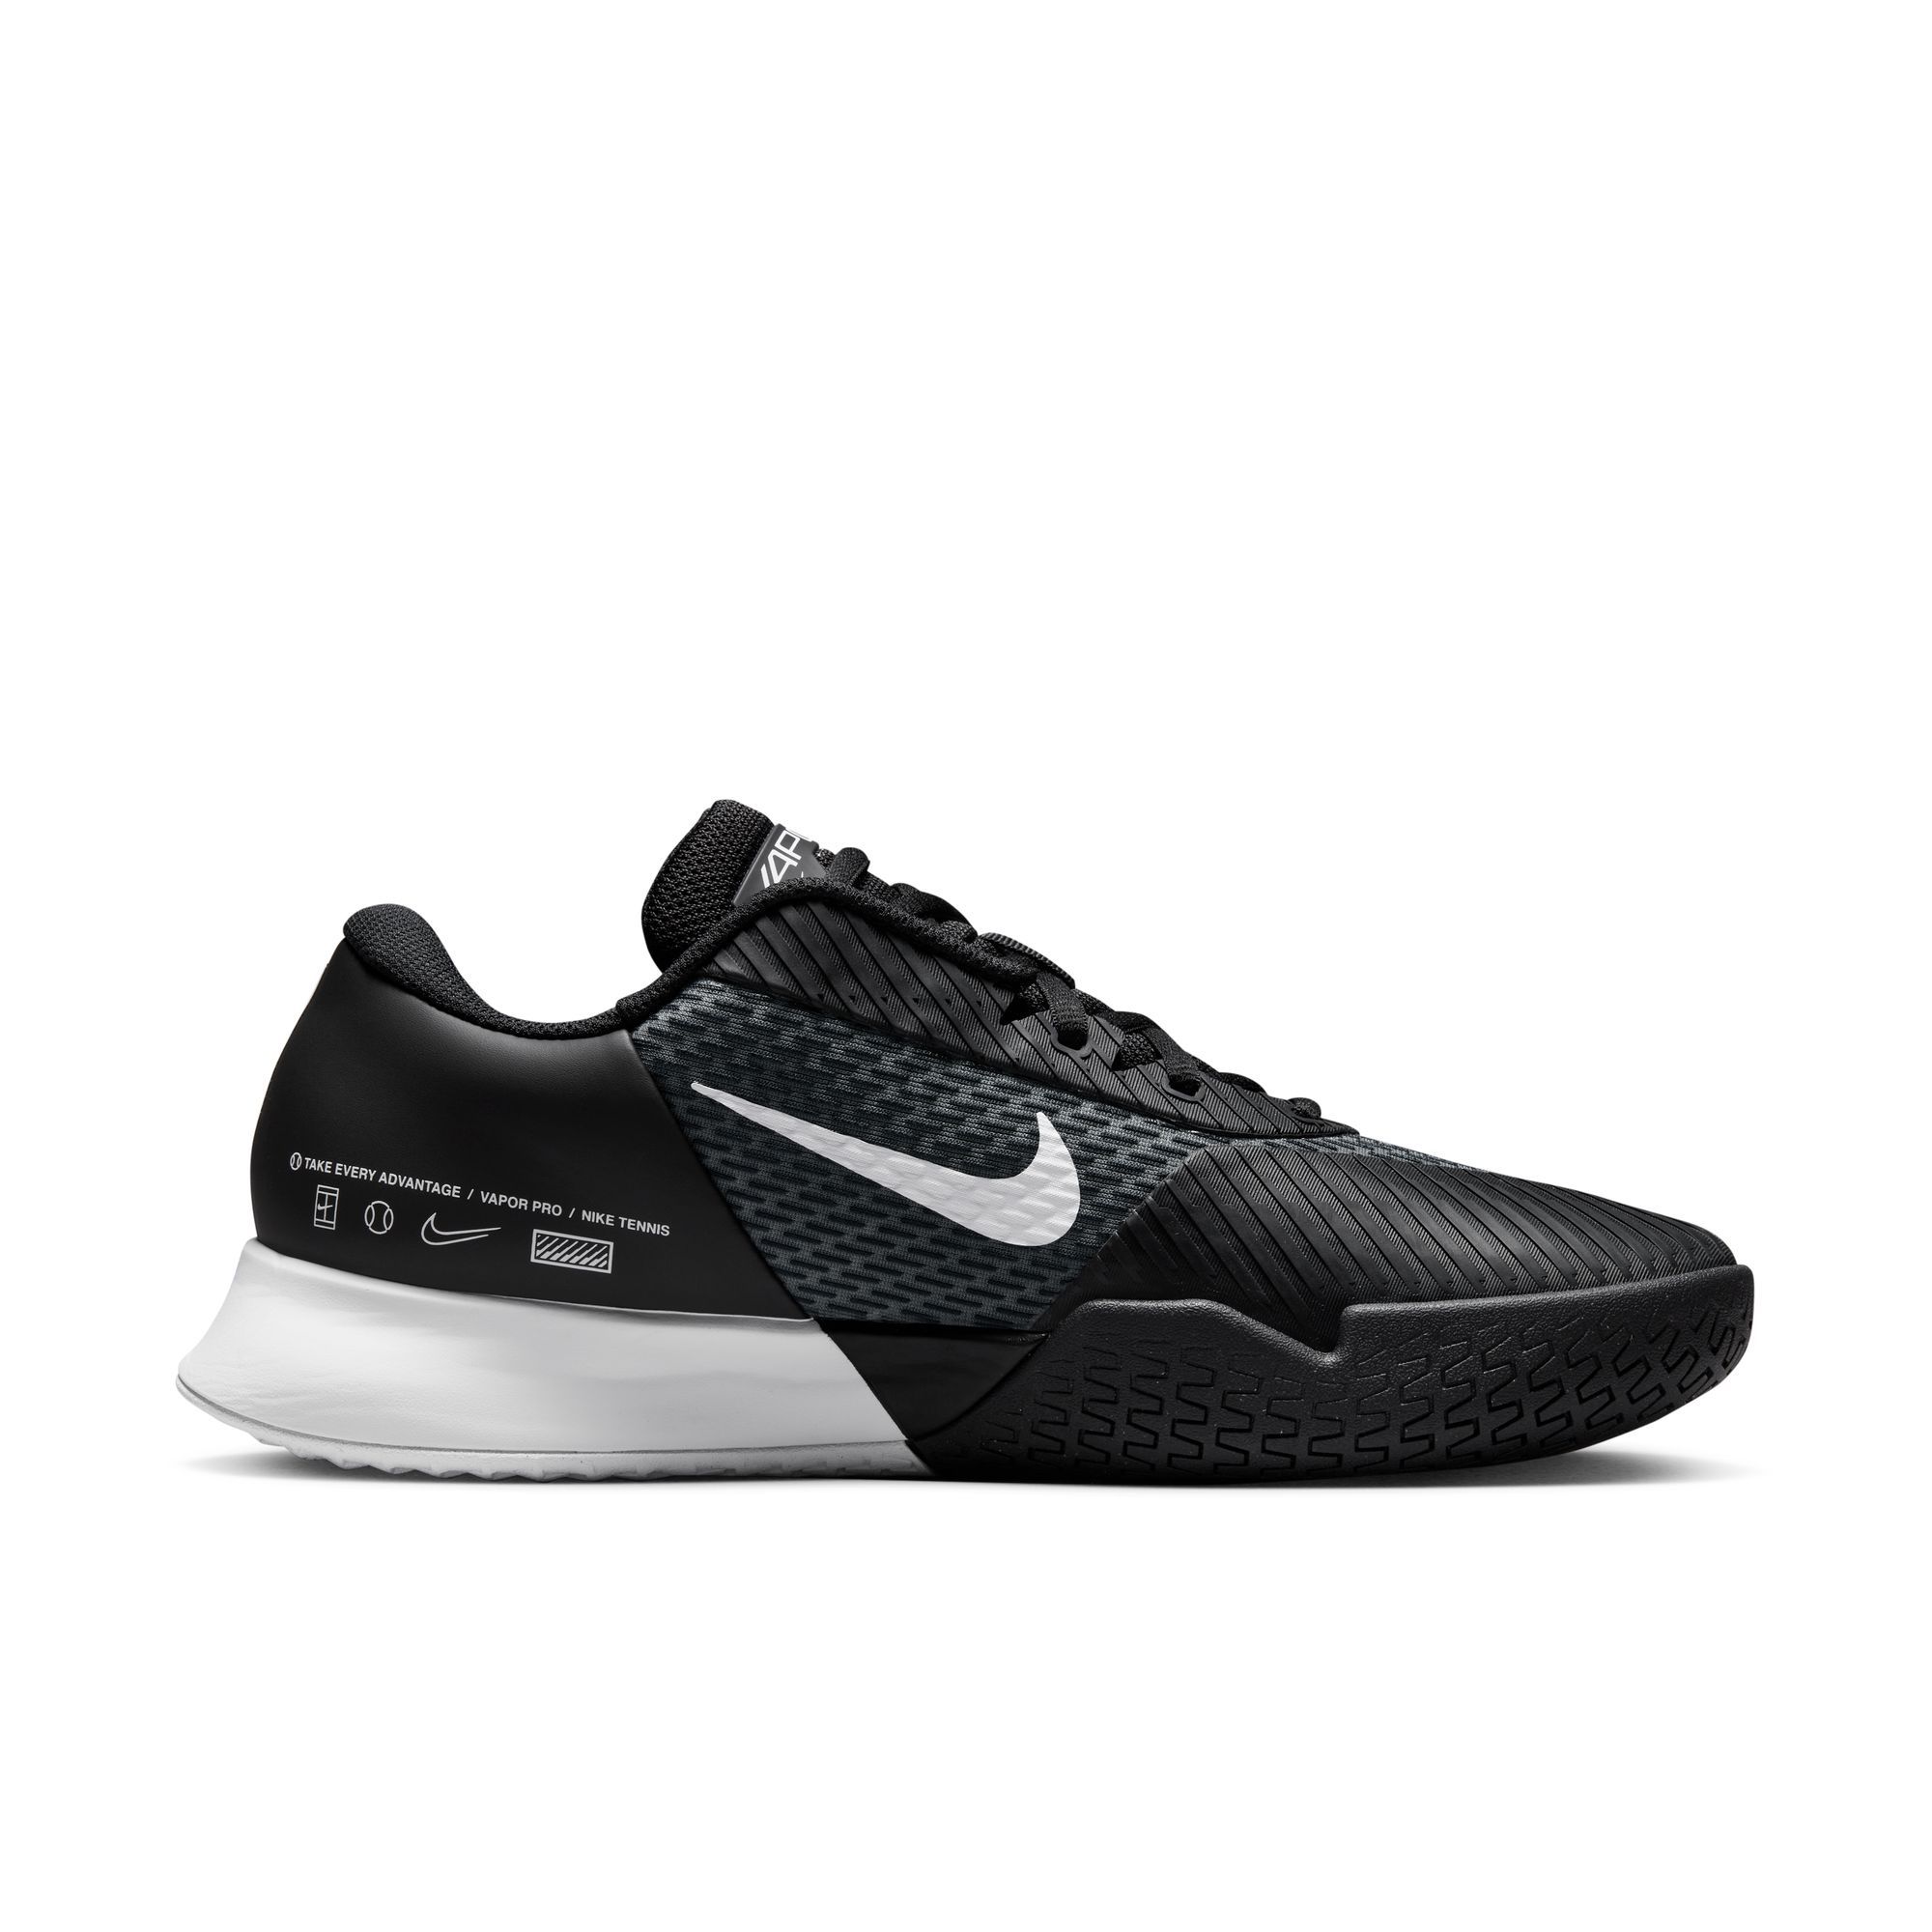 Image of Nike Men's Zoom Vapor Pro 2 Tennis Shoes Court Shoes